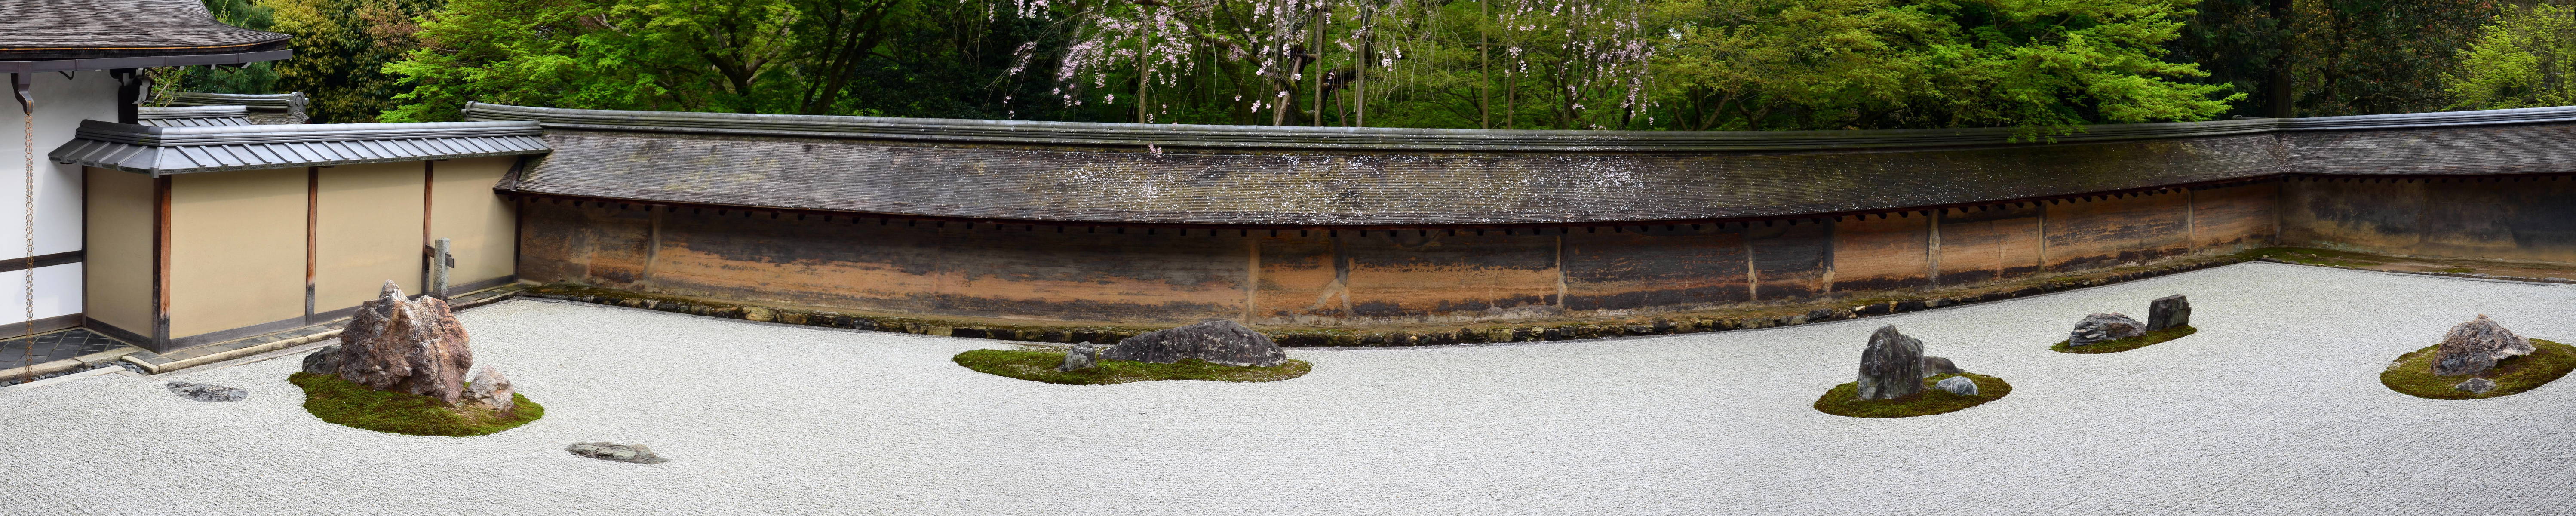 Ryoan-ji temple - Kyoto.jpg